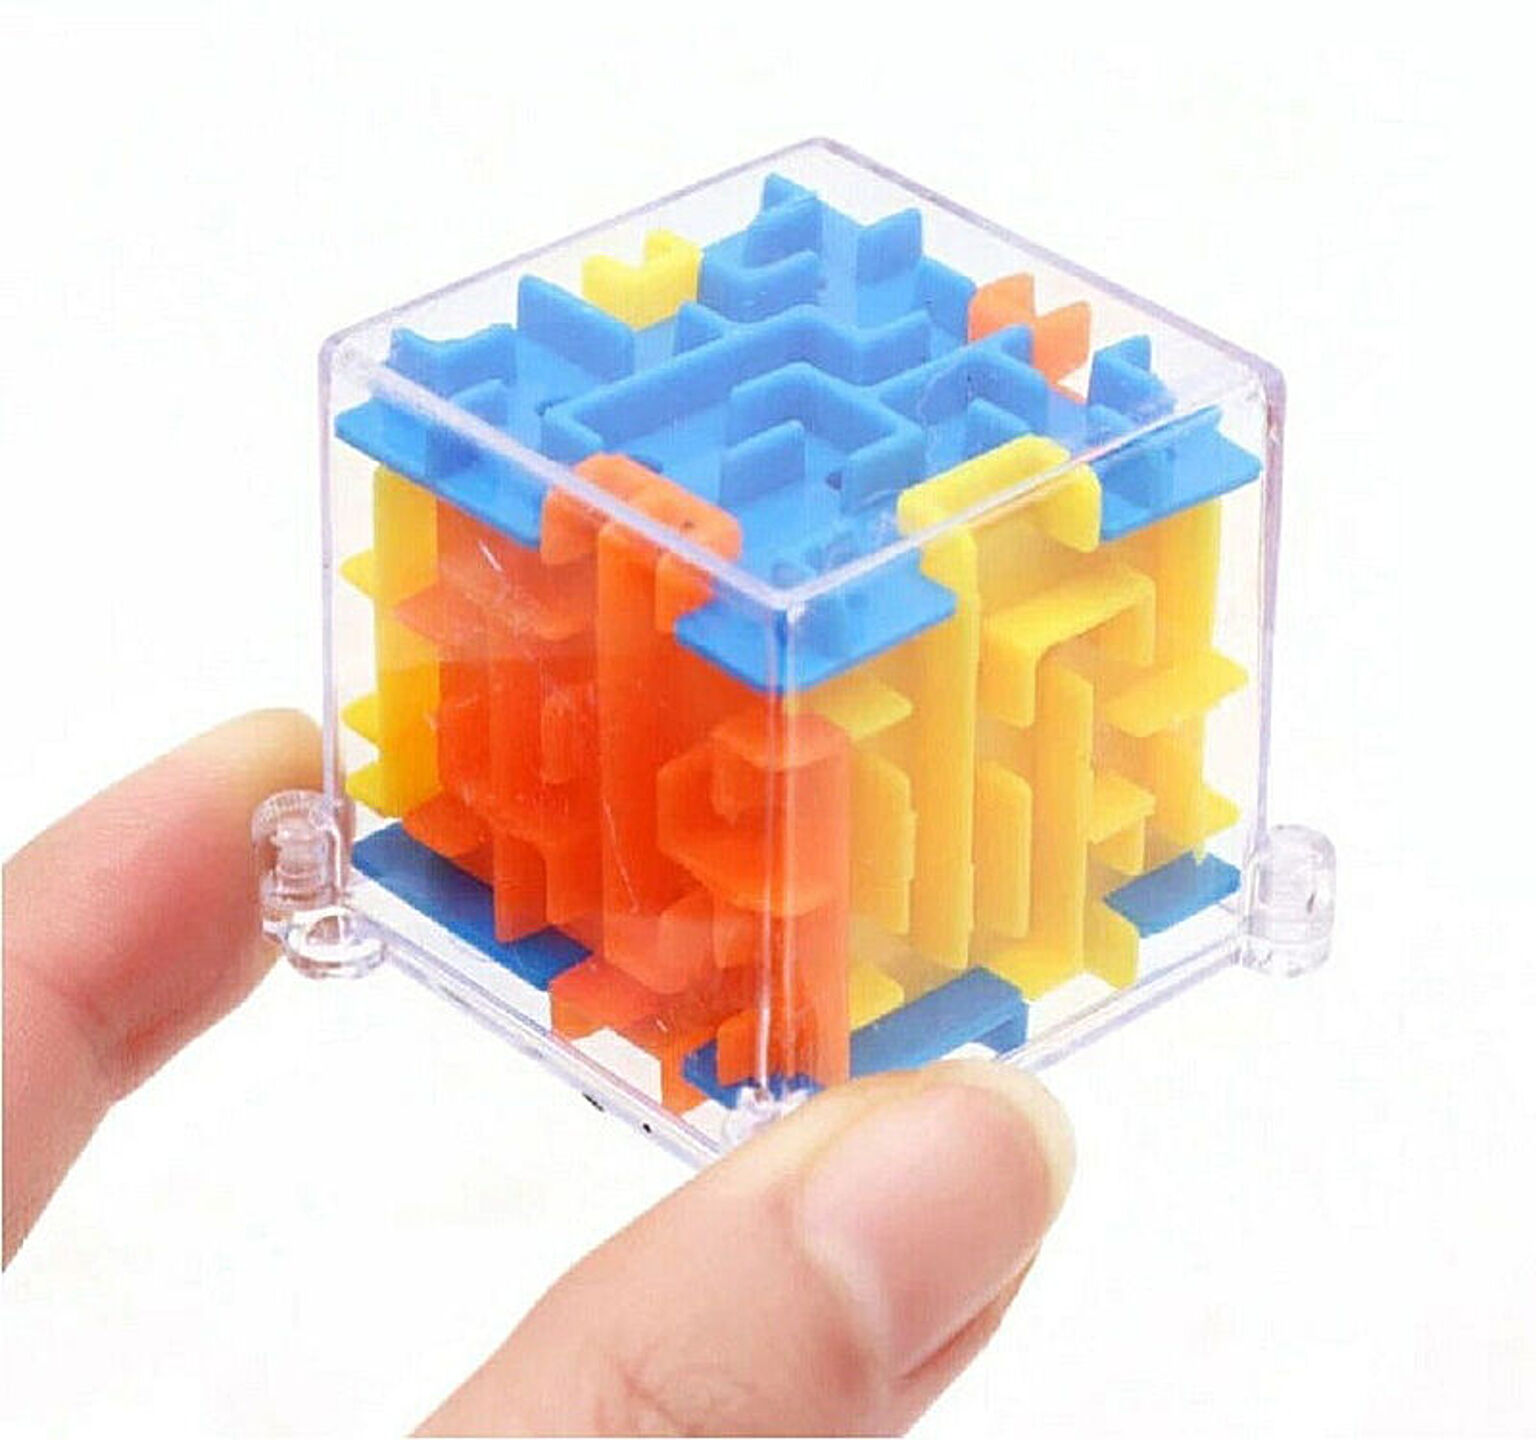 【訳あり】 玩具 立体パズル 迷路 パズル 立方体 キューブ パズル 3D 迷路 立体迷路 暇つぶし キューブ 密閉安全 迷路 ゲーム こども 脳トレ 知育 ブロック おもちゃ